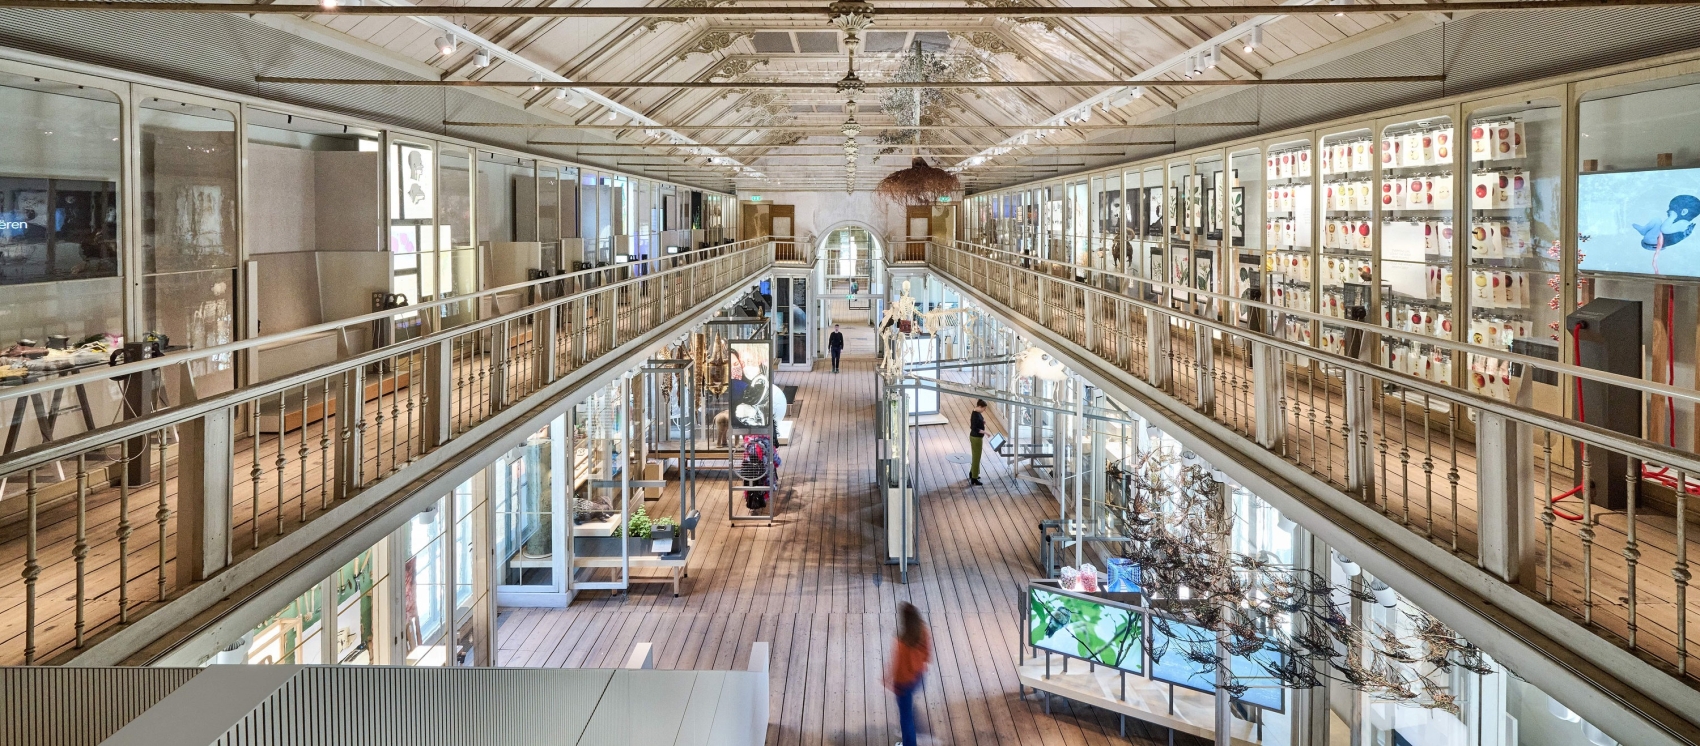 Groote Museum: Gemeinsamkeiten zwischen Mensch und Natur entdecken